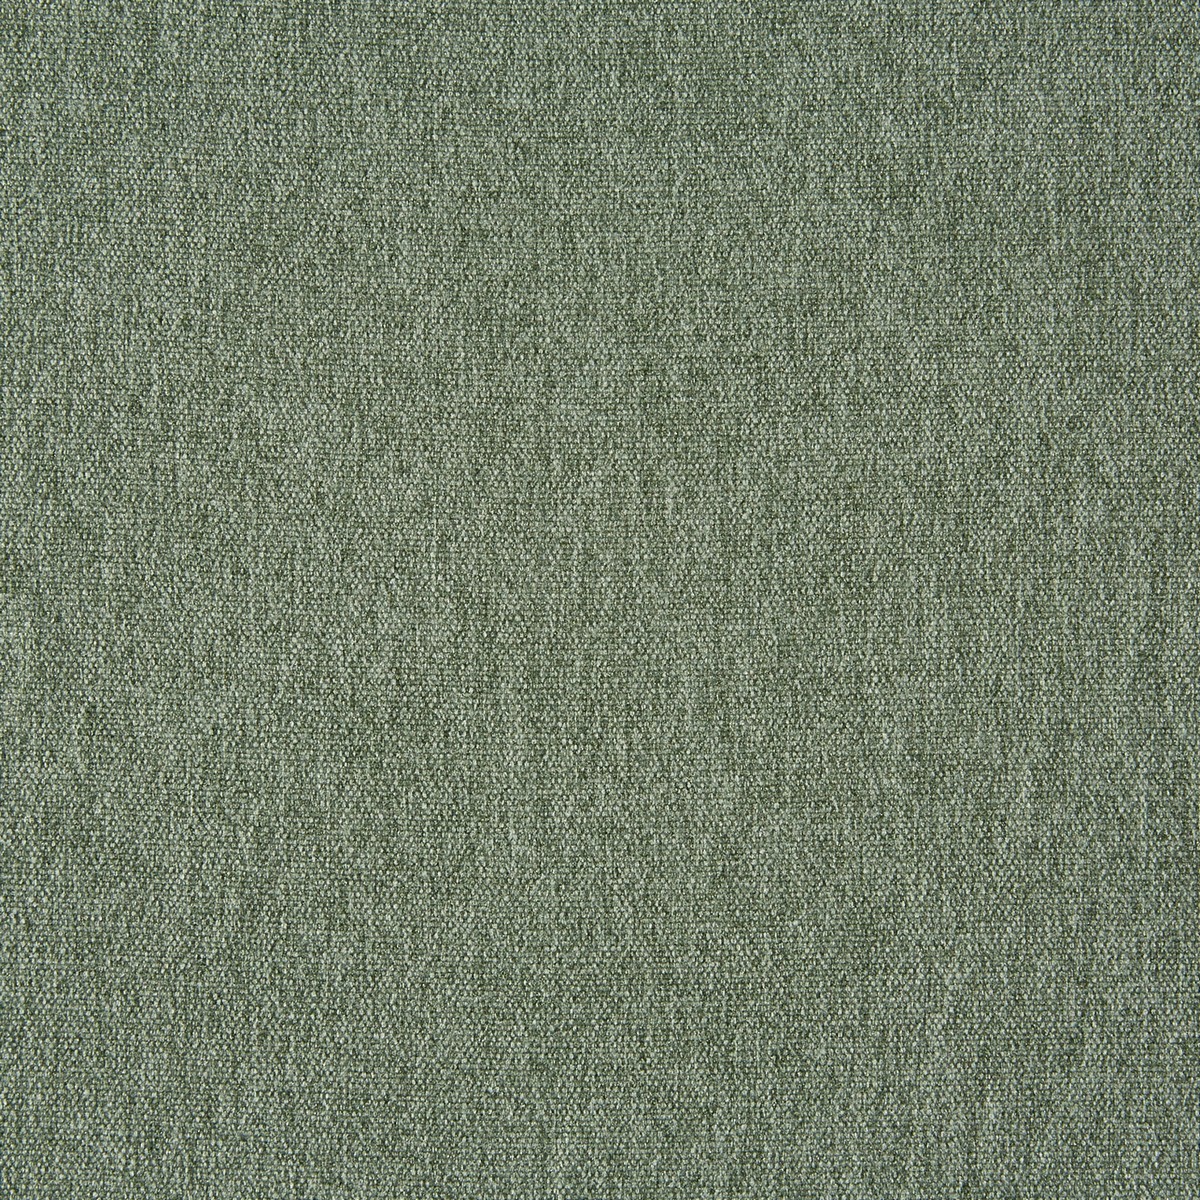 Stamford Celedon Fabric by Prestigious Textiles